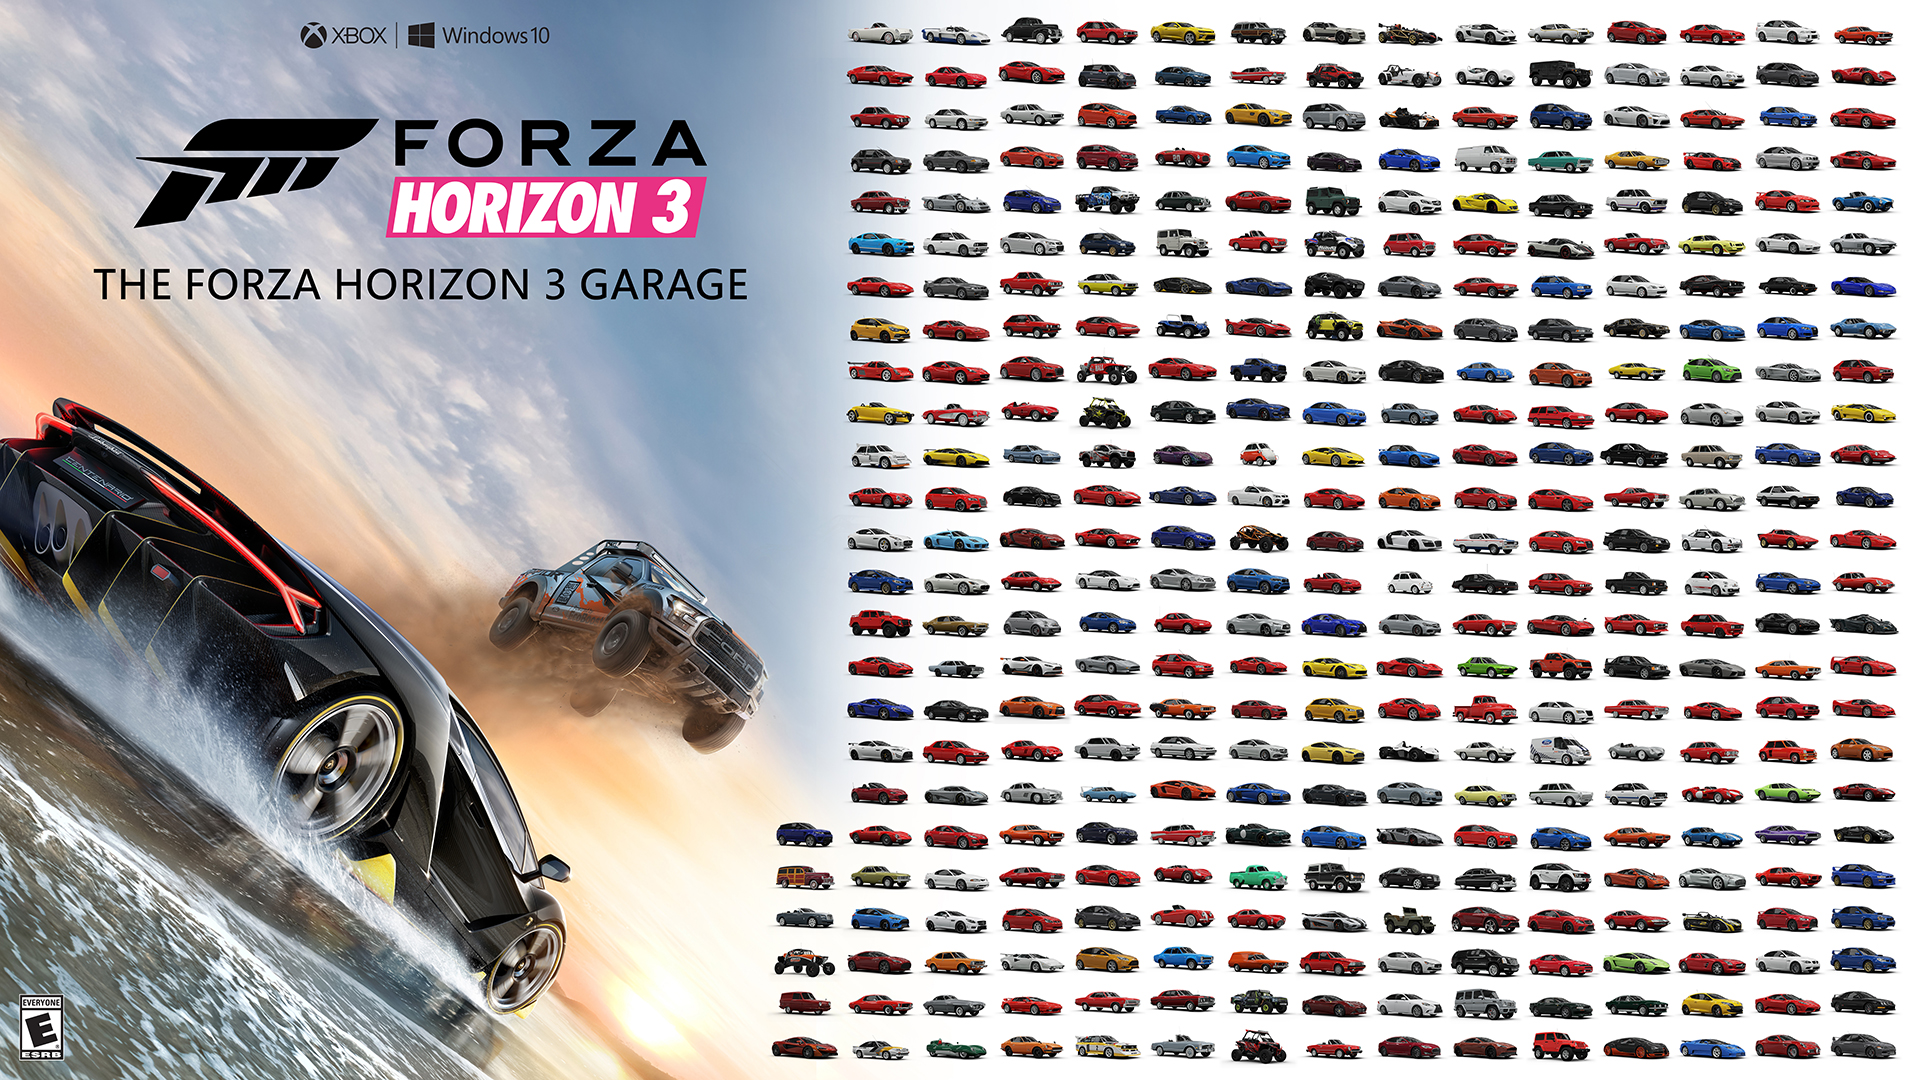 Forza Horizon 3, Xbox, Windows